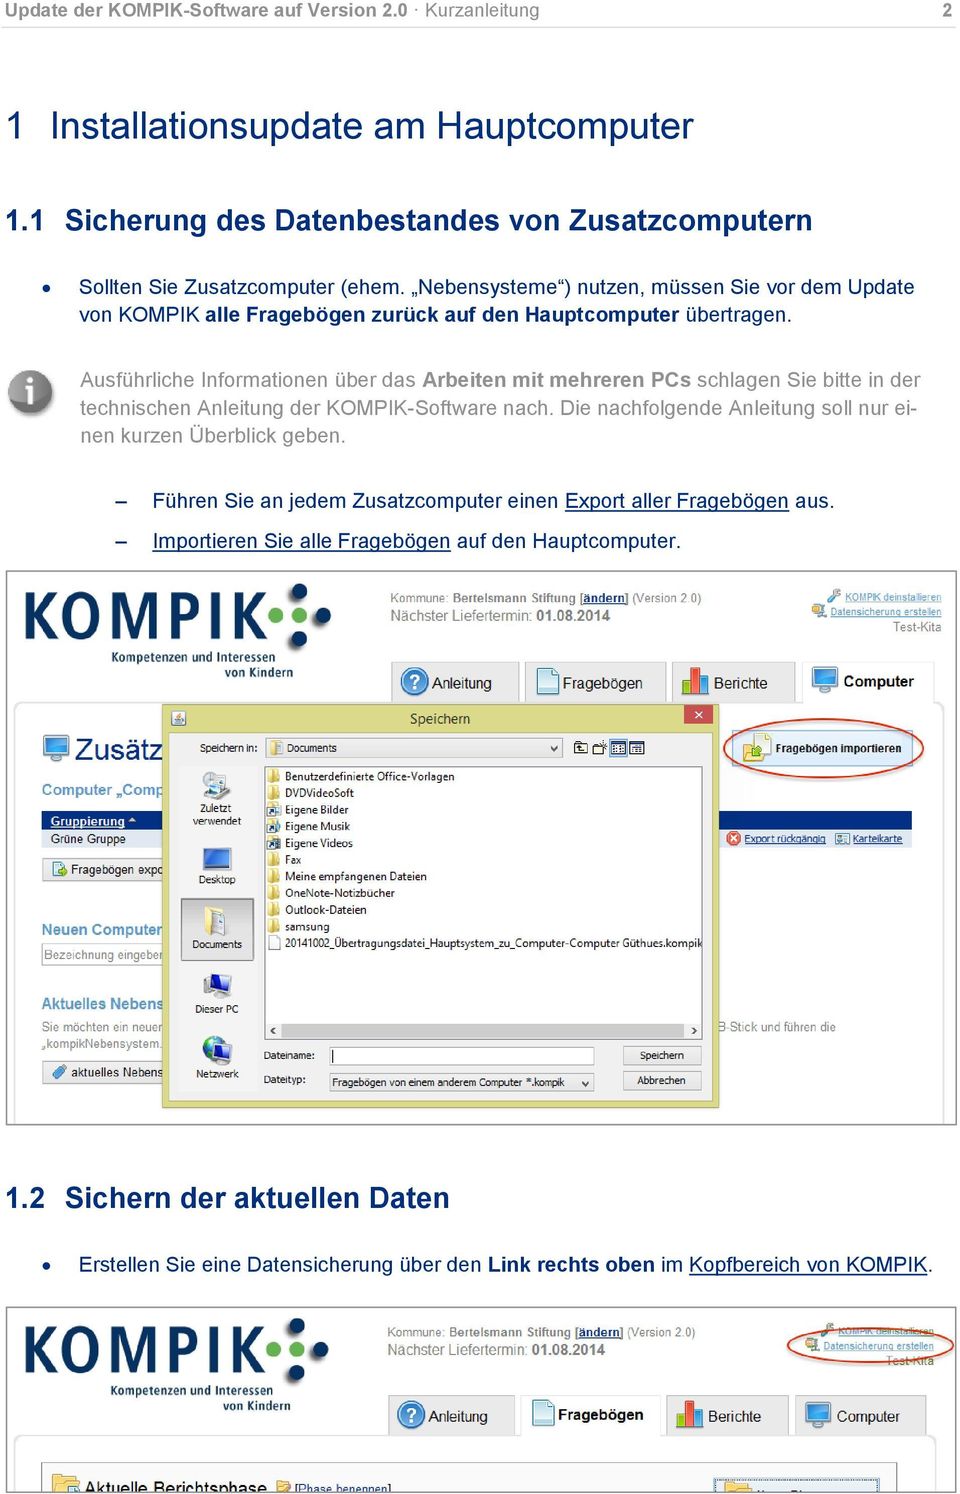 Ausführliche Informationen über das Arbeiten mit mehreren PCs schlagen Sie bitte in der technischen Anleitung der KOMPIK-Software nach.